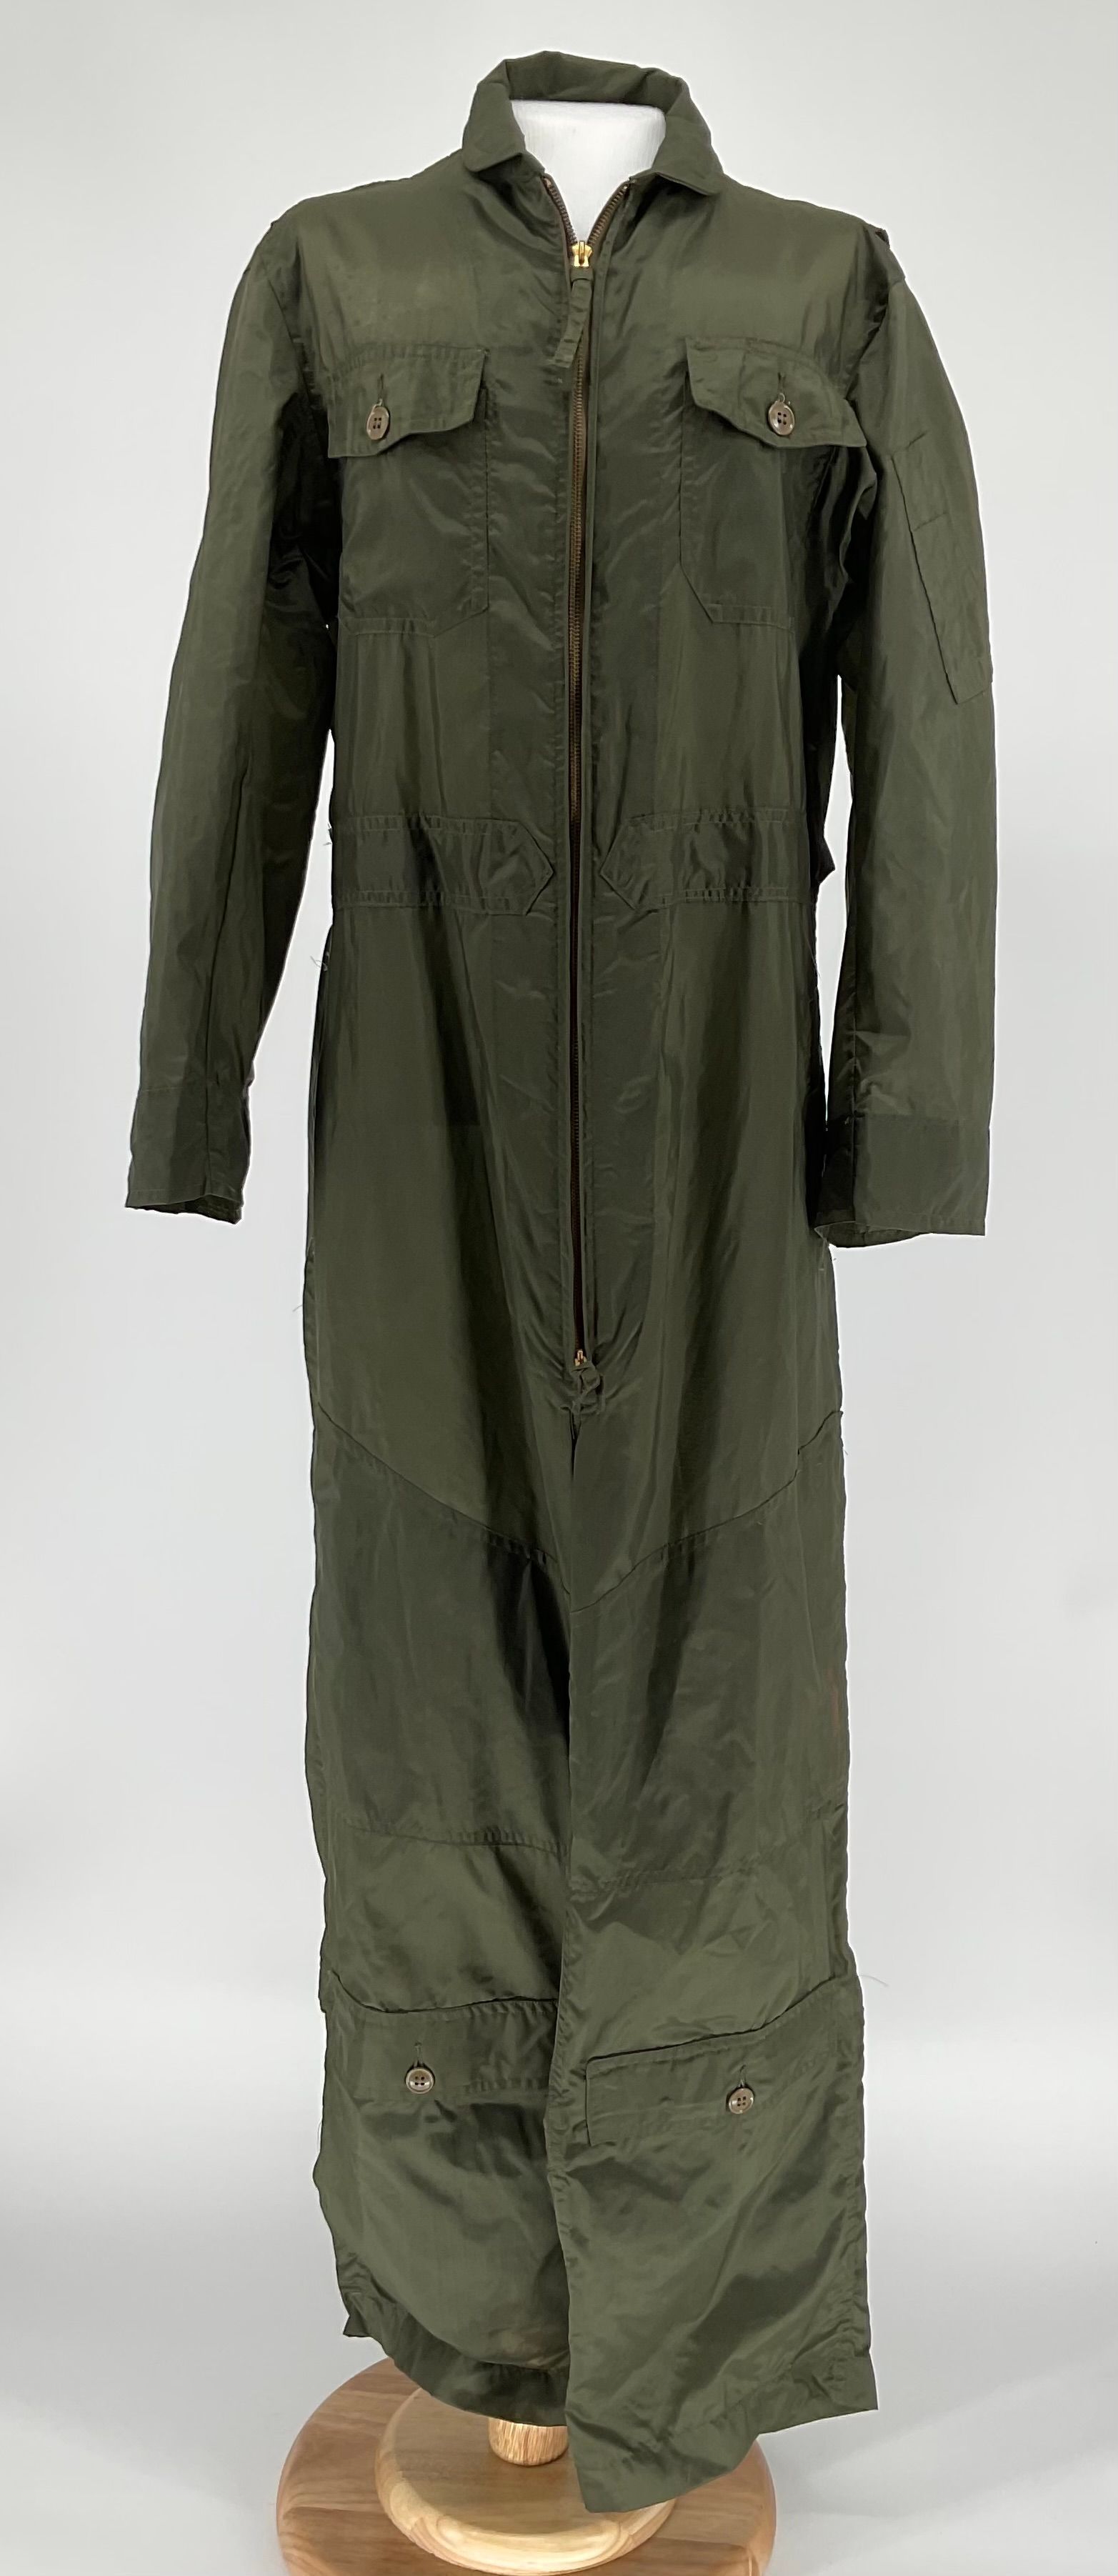 Primary Image of US Navy Nylon Flight Suit